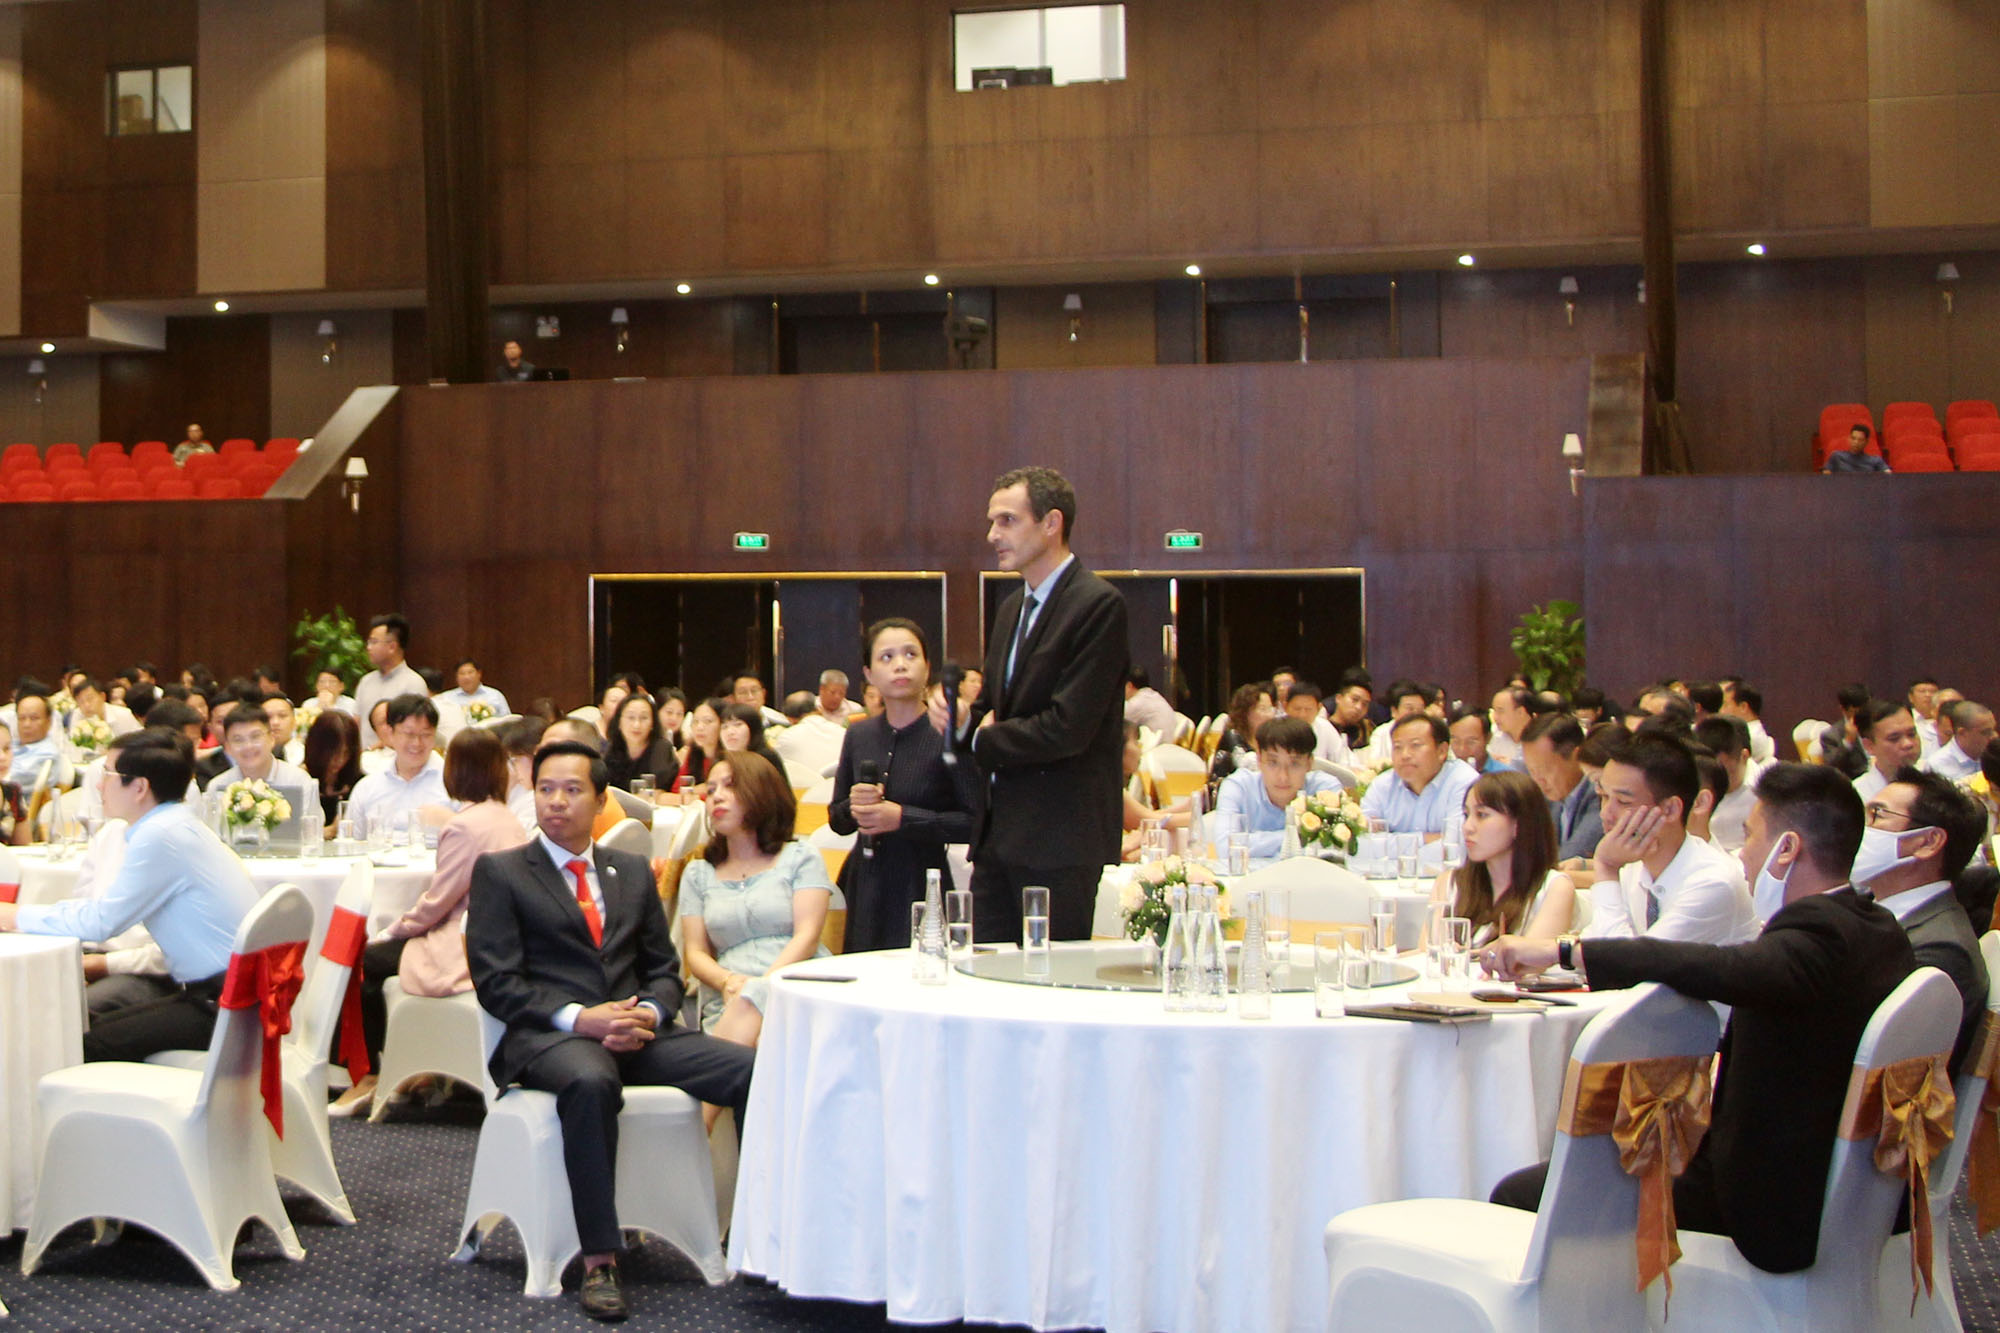 tỉnh Quảng Ninh tổ chức Hội nghị gặp mặt doanh nghiệp nhằm kịp thời tháo gỡ khó khăn, vướng mắc của doanh nghiệp, thúc đẩy sản xuất, kinh doanh